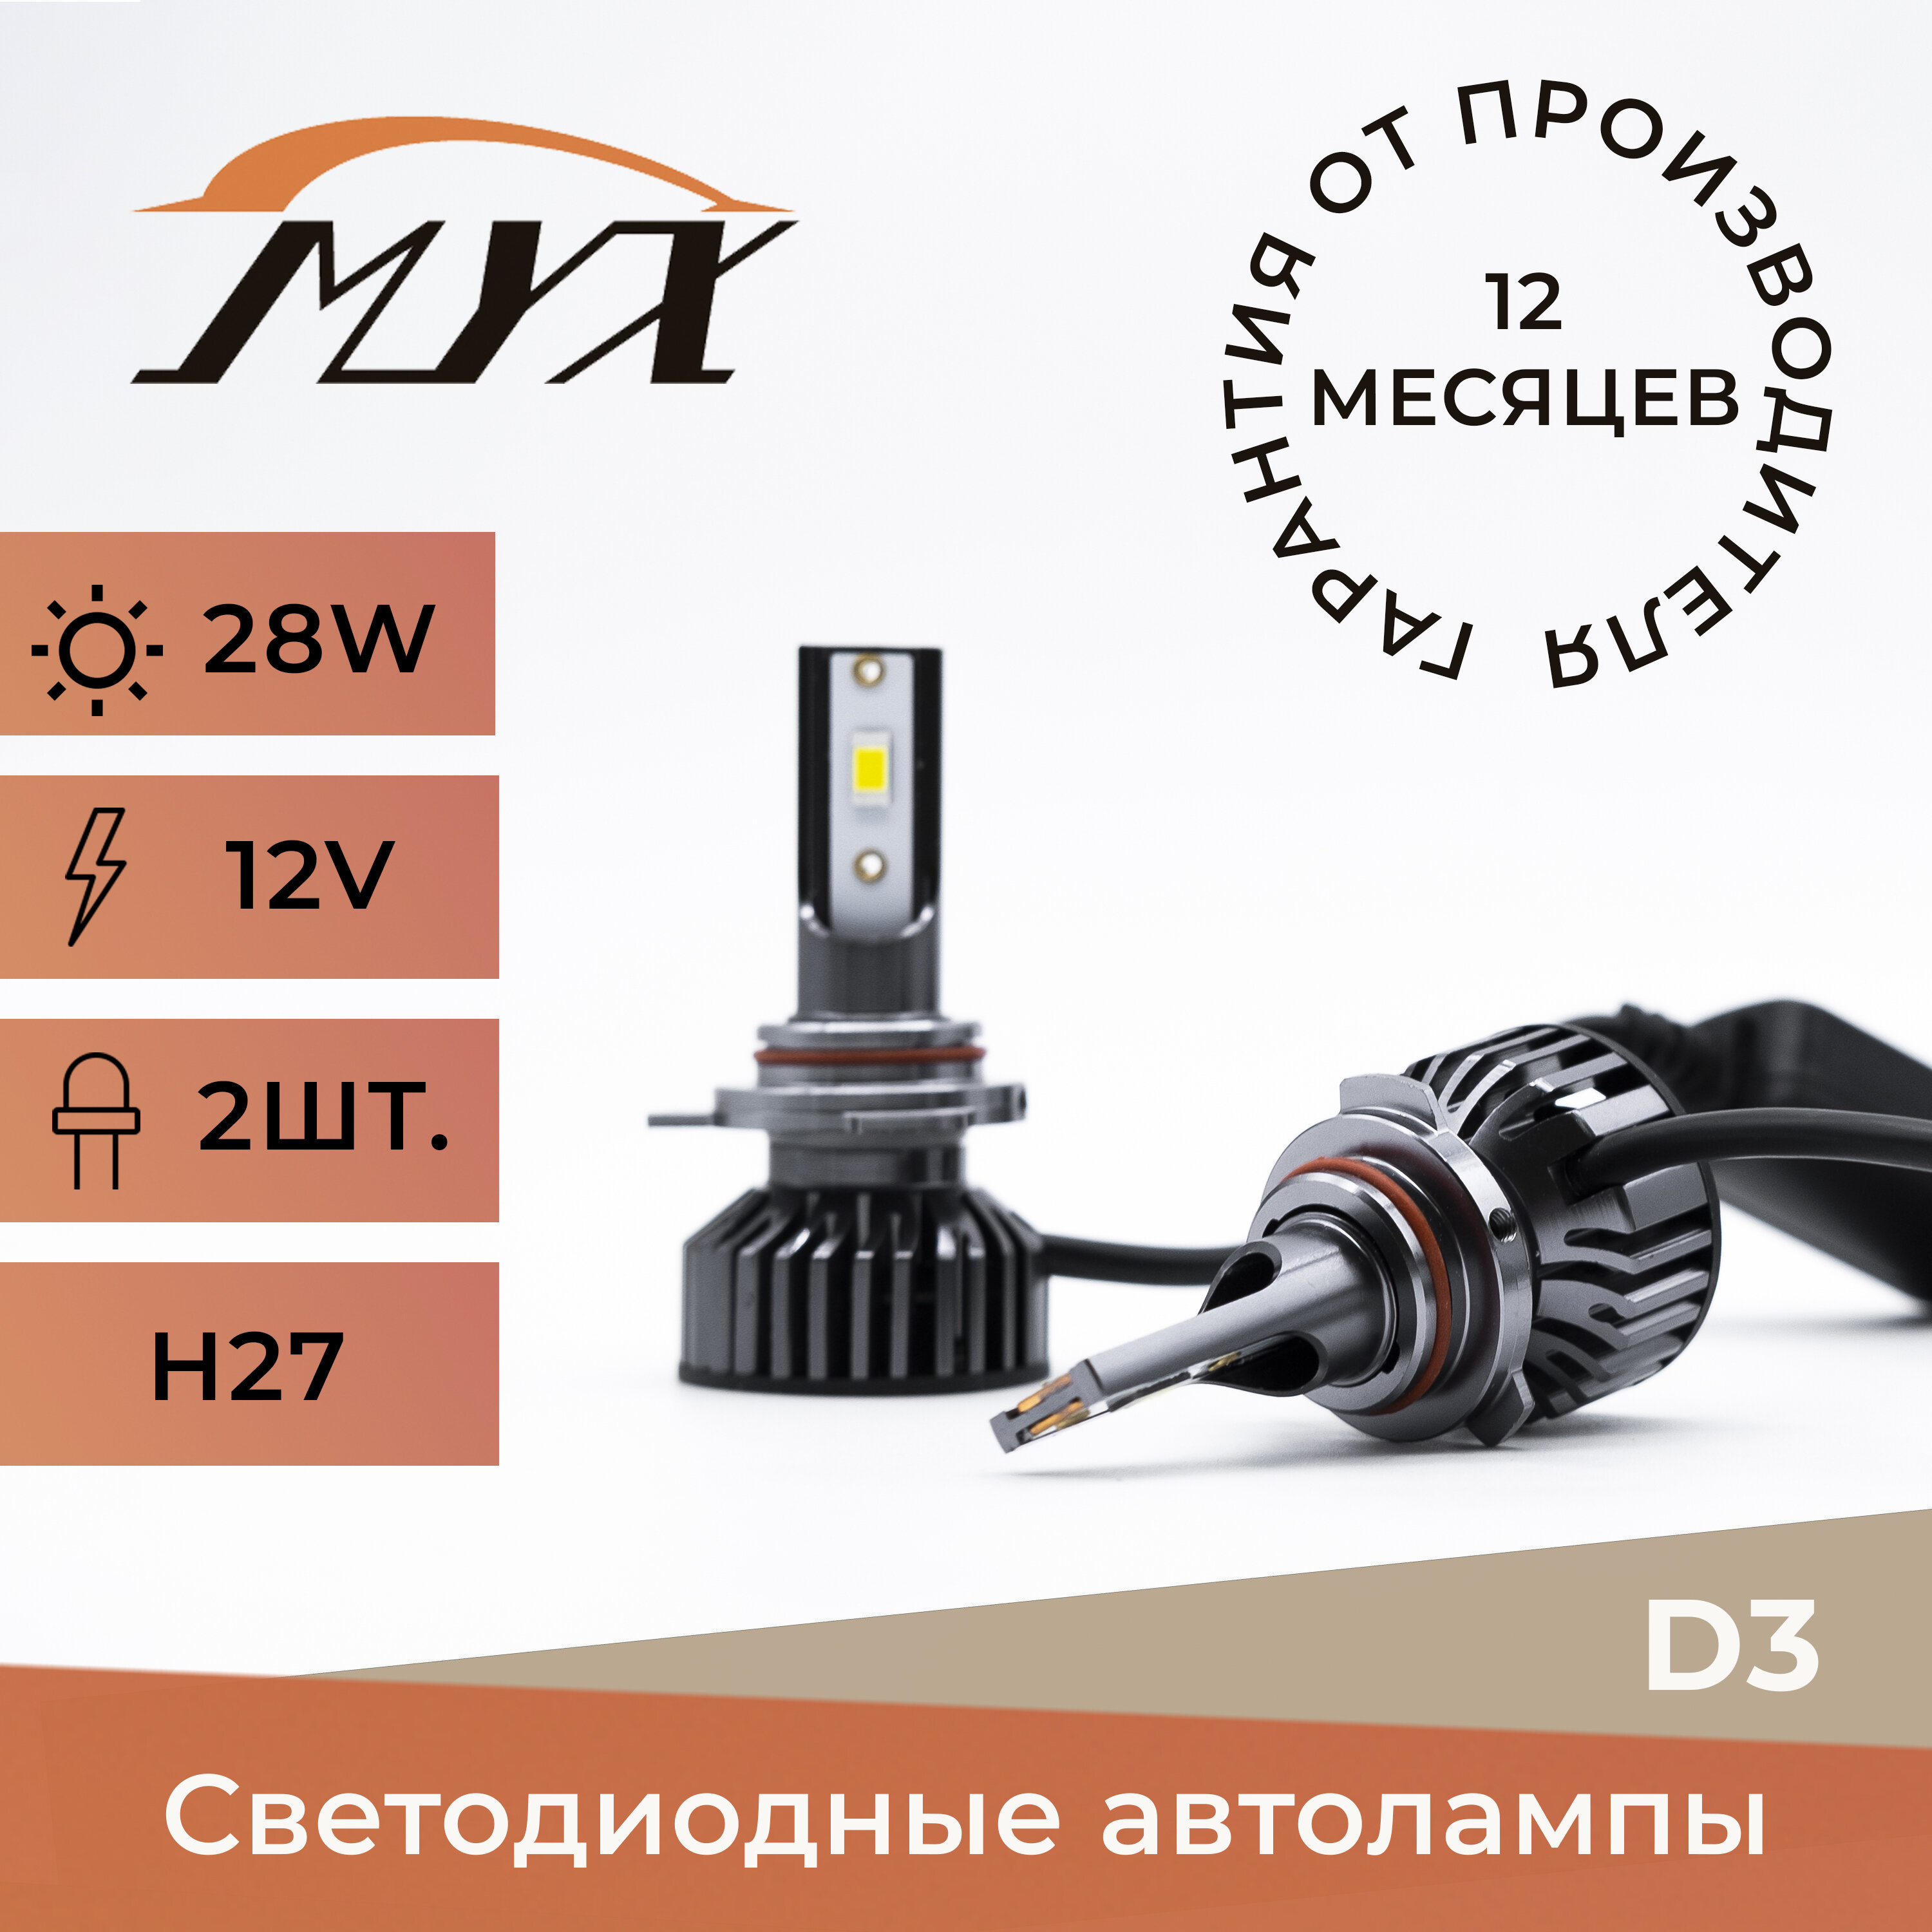 Автолампы светодиодные MYX Light D3, напряжение 12V, мощность 28W, чип CSP 3570, температура света 6000K, комплект 2 шт., цоколь H27